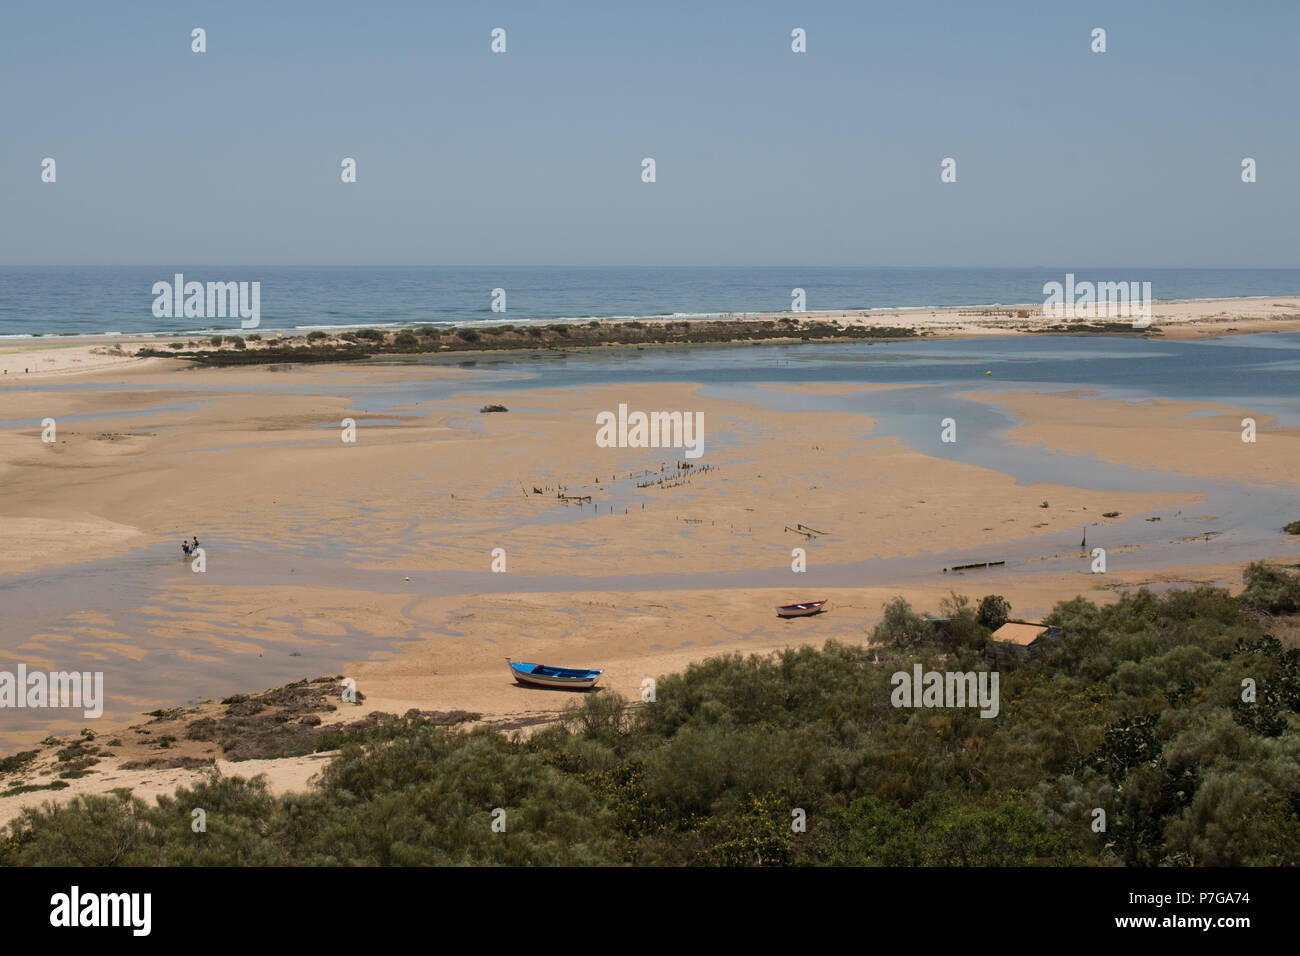 Plage de sable avec des flaques après une marée haute. Les arbres en premier plan, l'océan Atlantique à l'arrière-plan. Ciel bleu. Cacela Velha, Algarve, Portugal. Banque D'Images